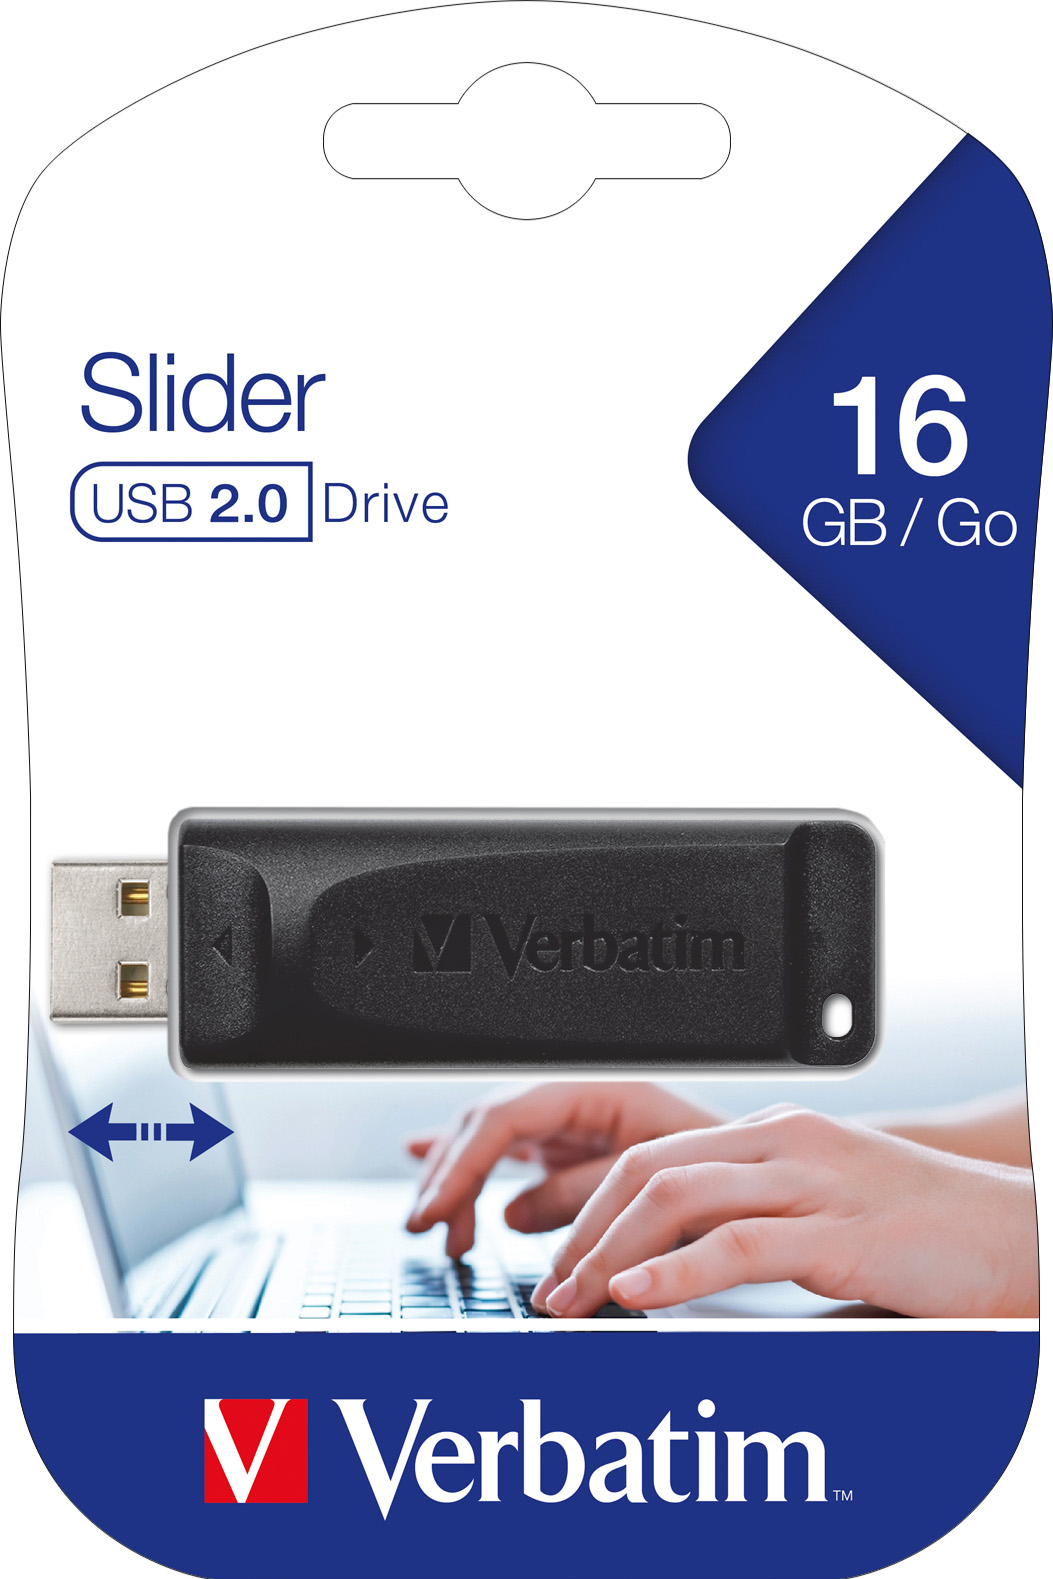 Verbatim USB 2.0 Stick 16GB, Slider (R) 10MB/s, (W) 4MB/s, Retail-Blister